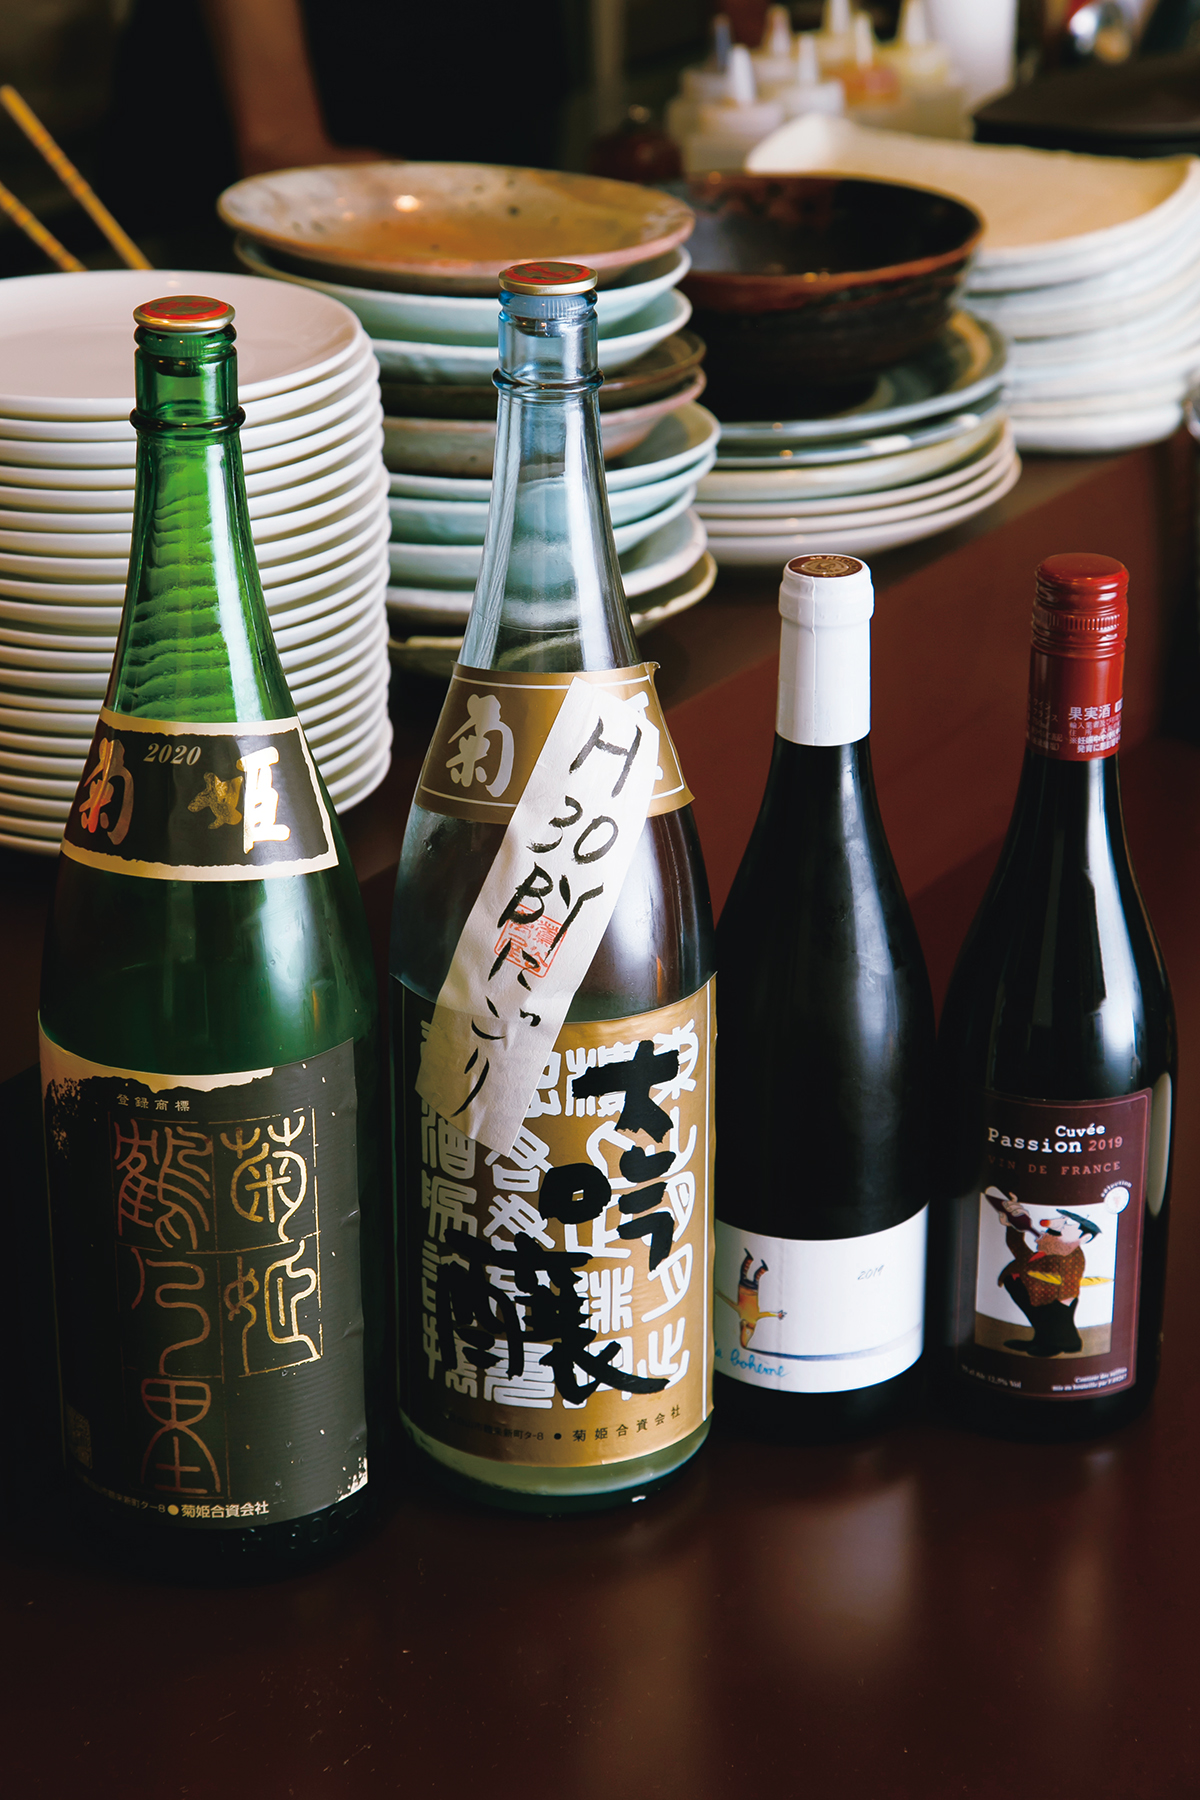 『菊姫&ナチュラルワイン　萬屋磯次郎』<br />
季節酒など菊姫は常時約15種。造り手の顔が見える直輸入ワインも。コロナ禍前はオーナーが現地まで行って買い付けていた